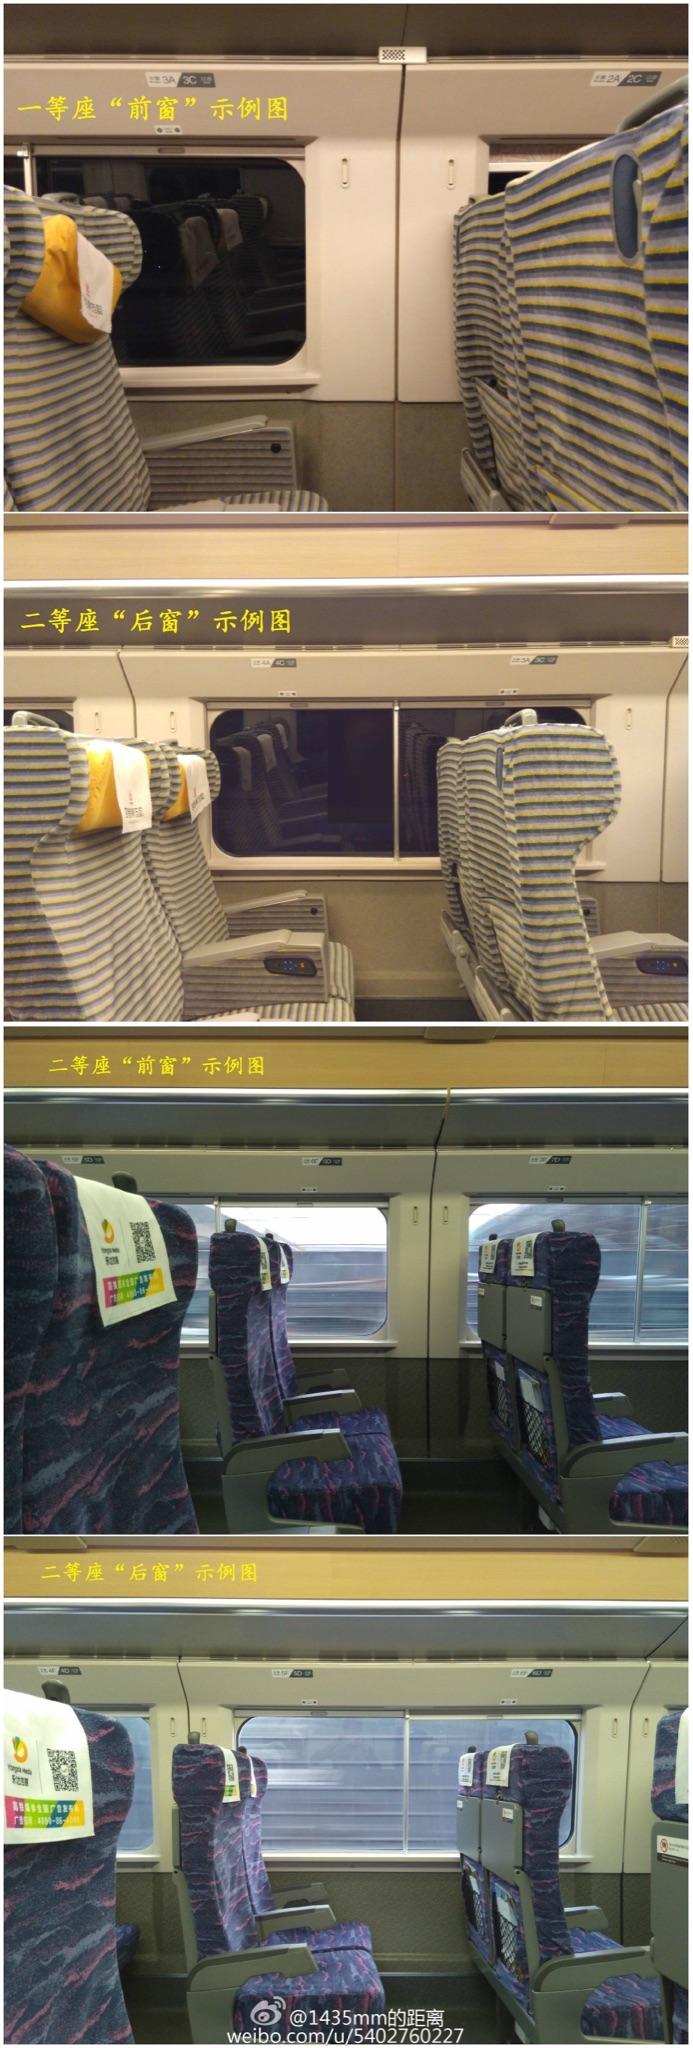 动车组列车一等座的 c,d 座位和二等座 f 座位相比哪个更加舒适?